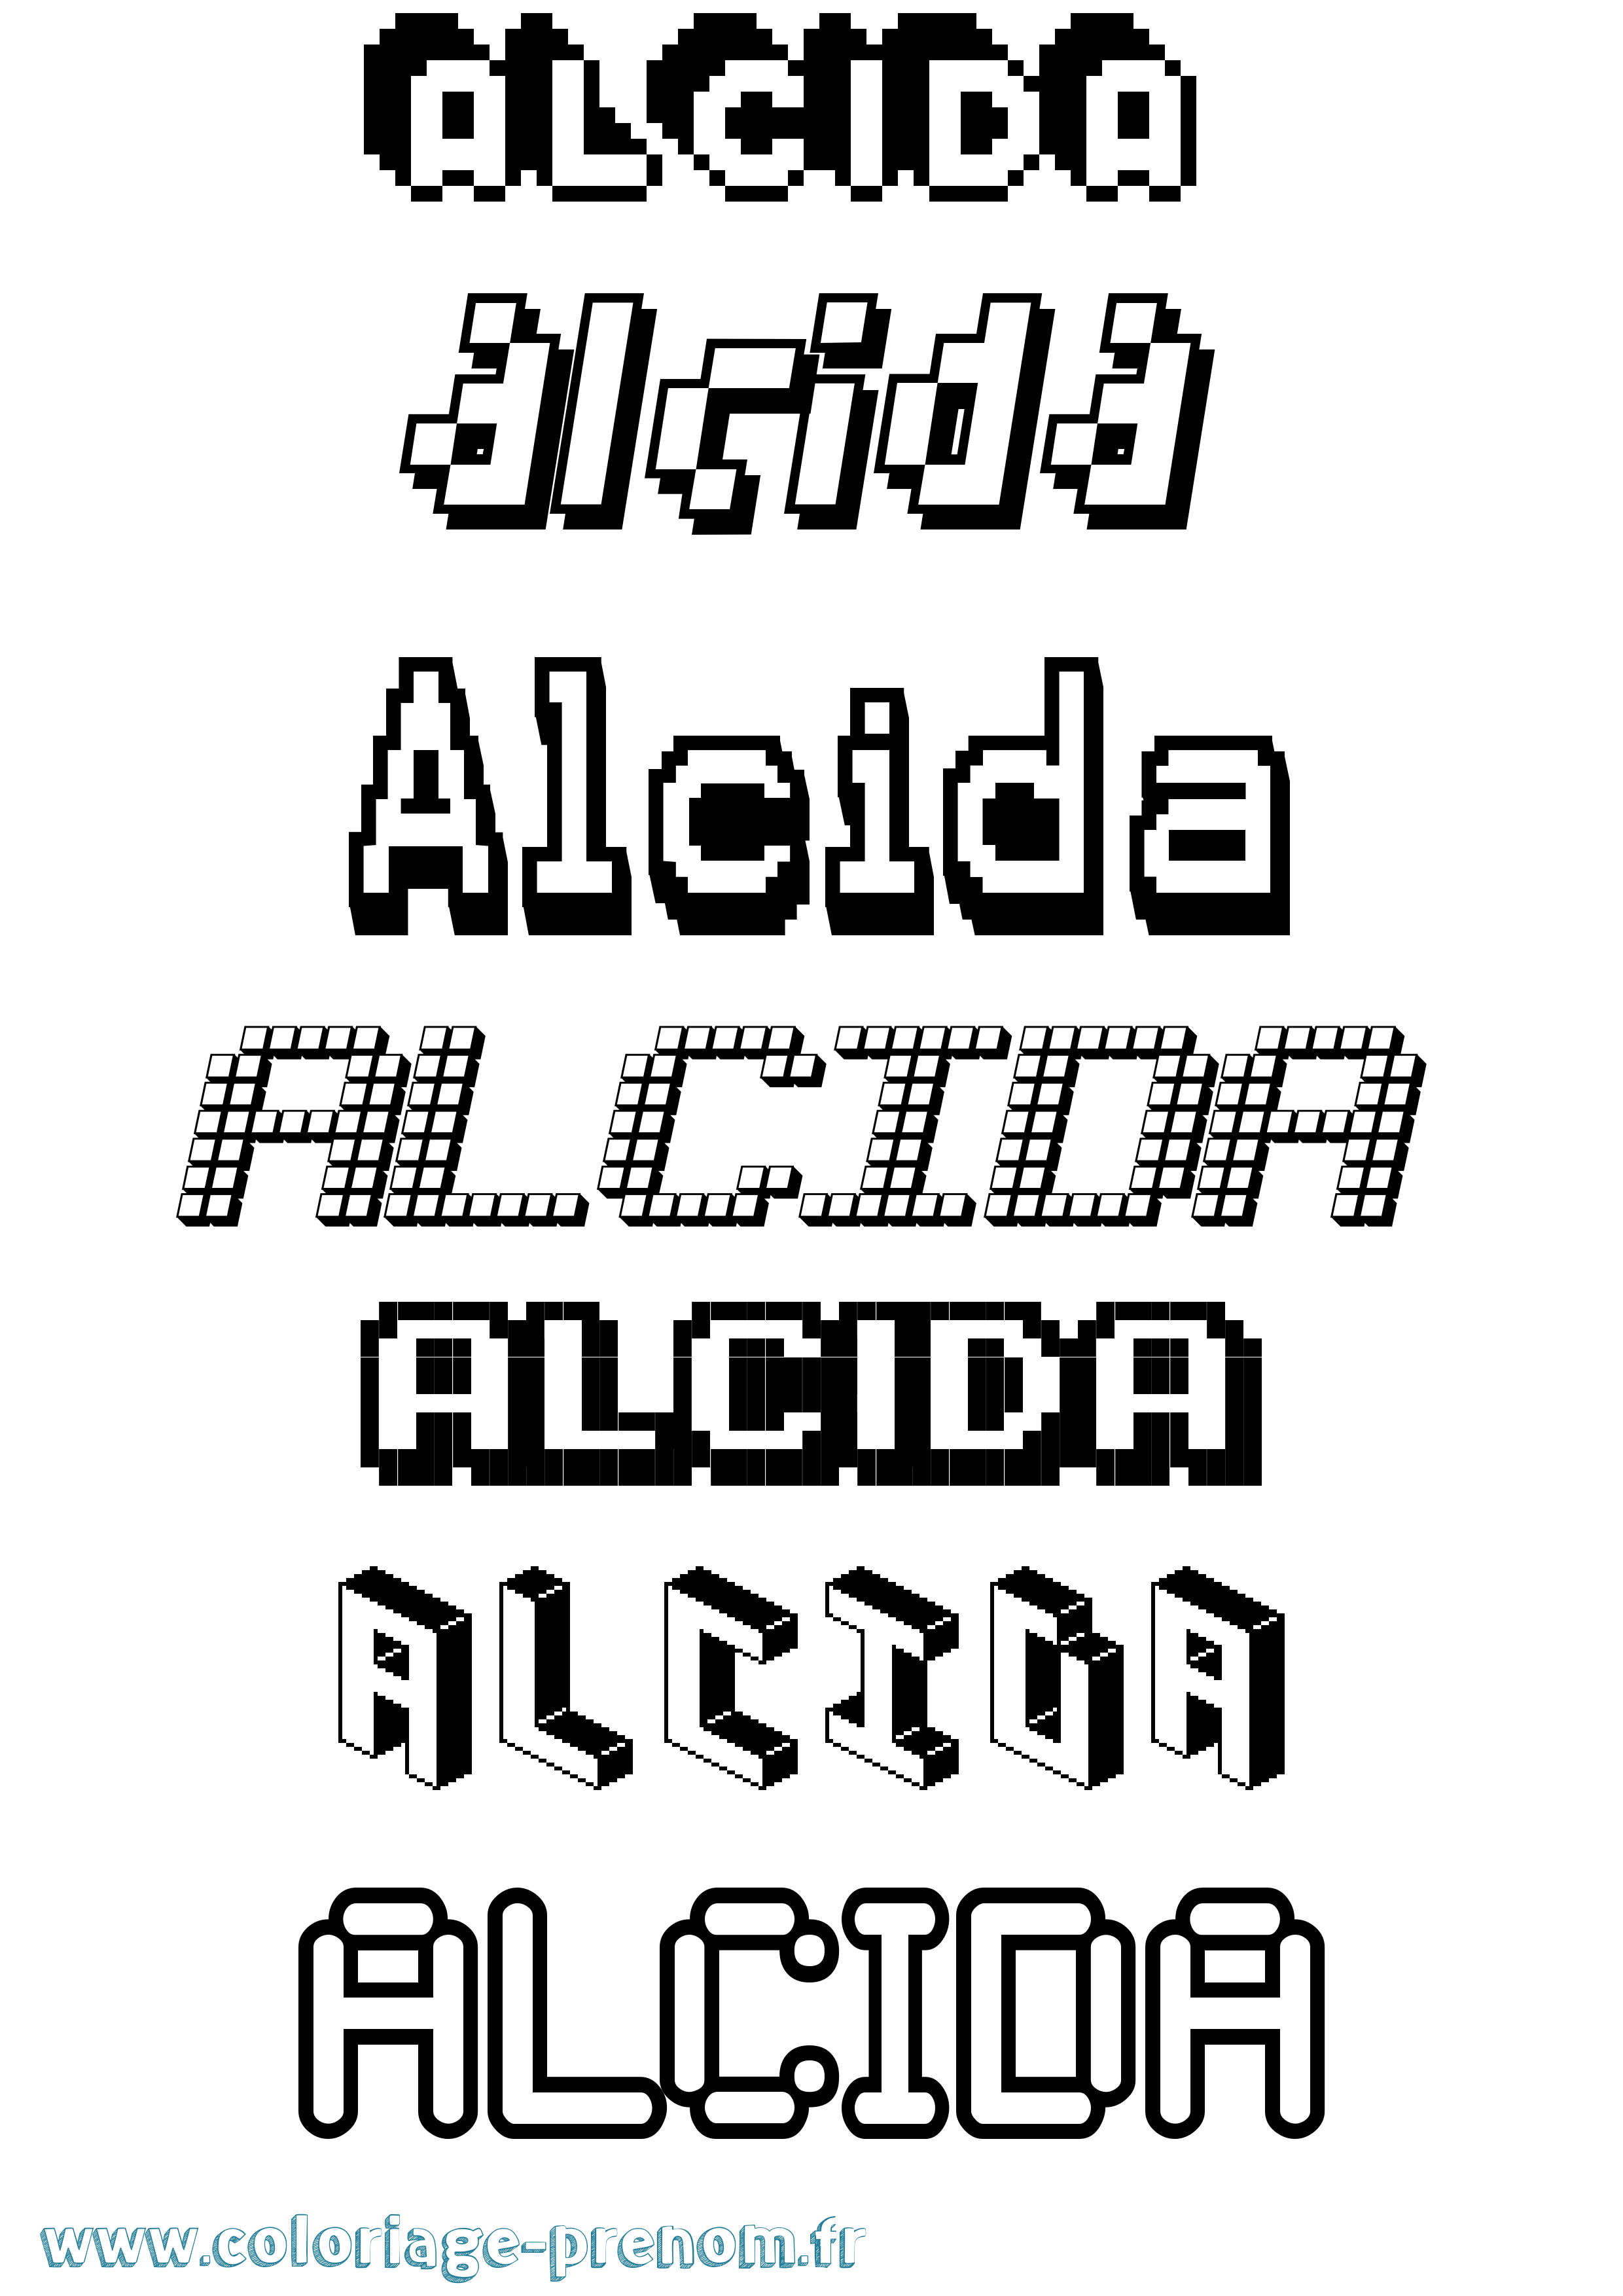 Coloriage prénom Alcida Pixel